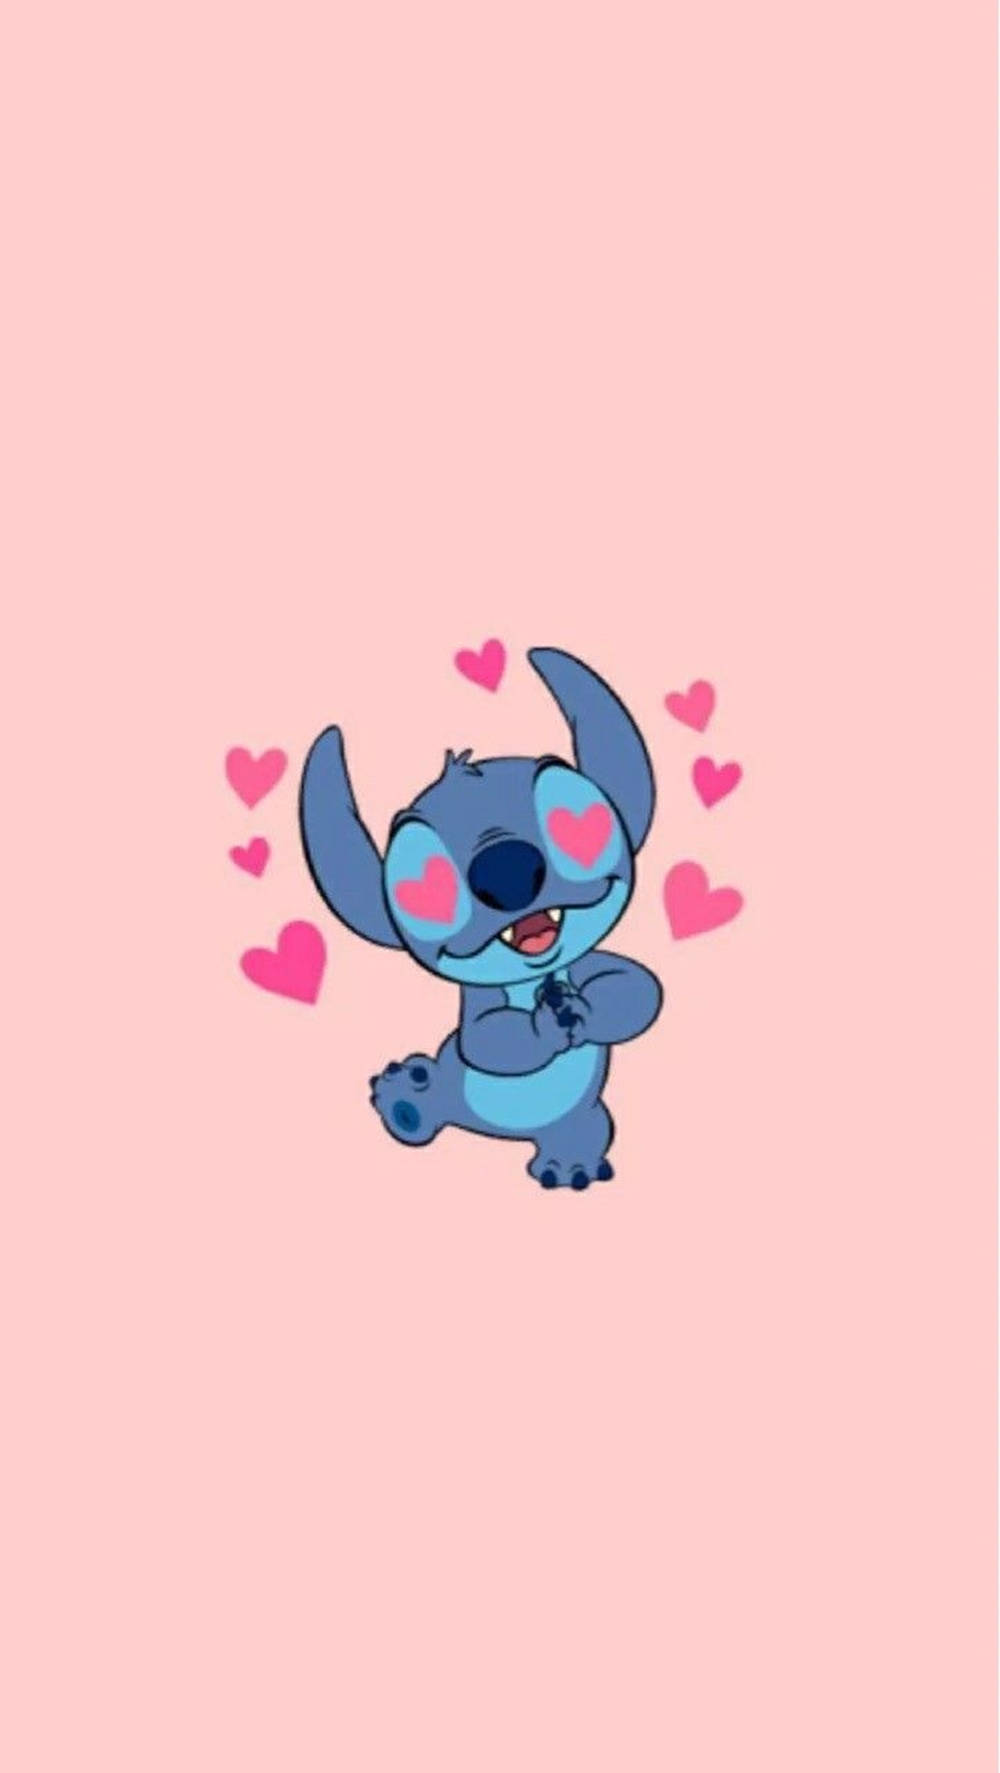 Cute Stitch In Love IPhone Wallpaper